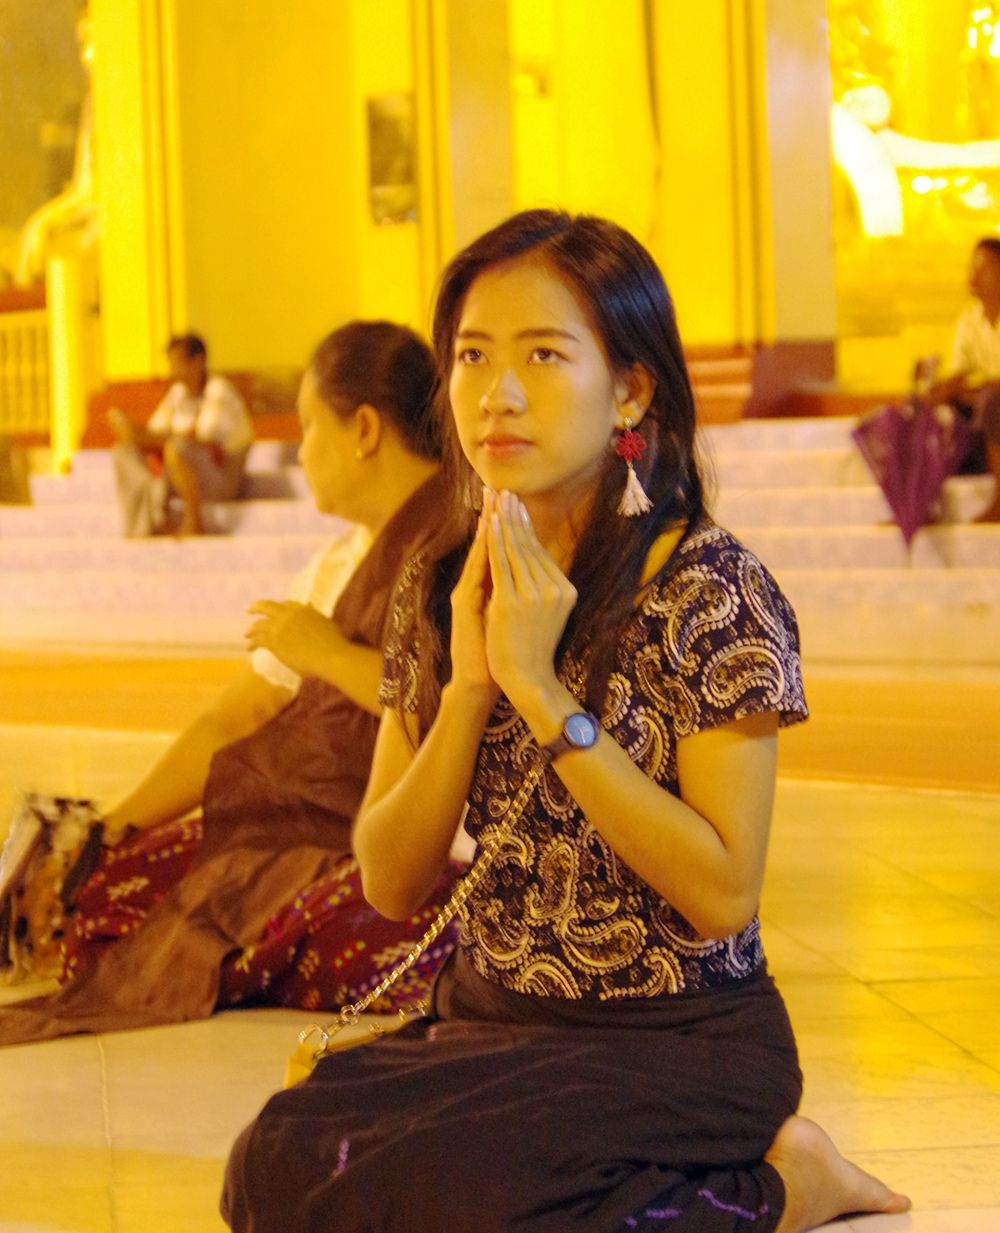 缅甸佛教徒图片